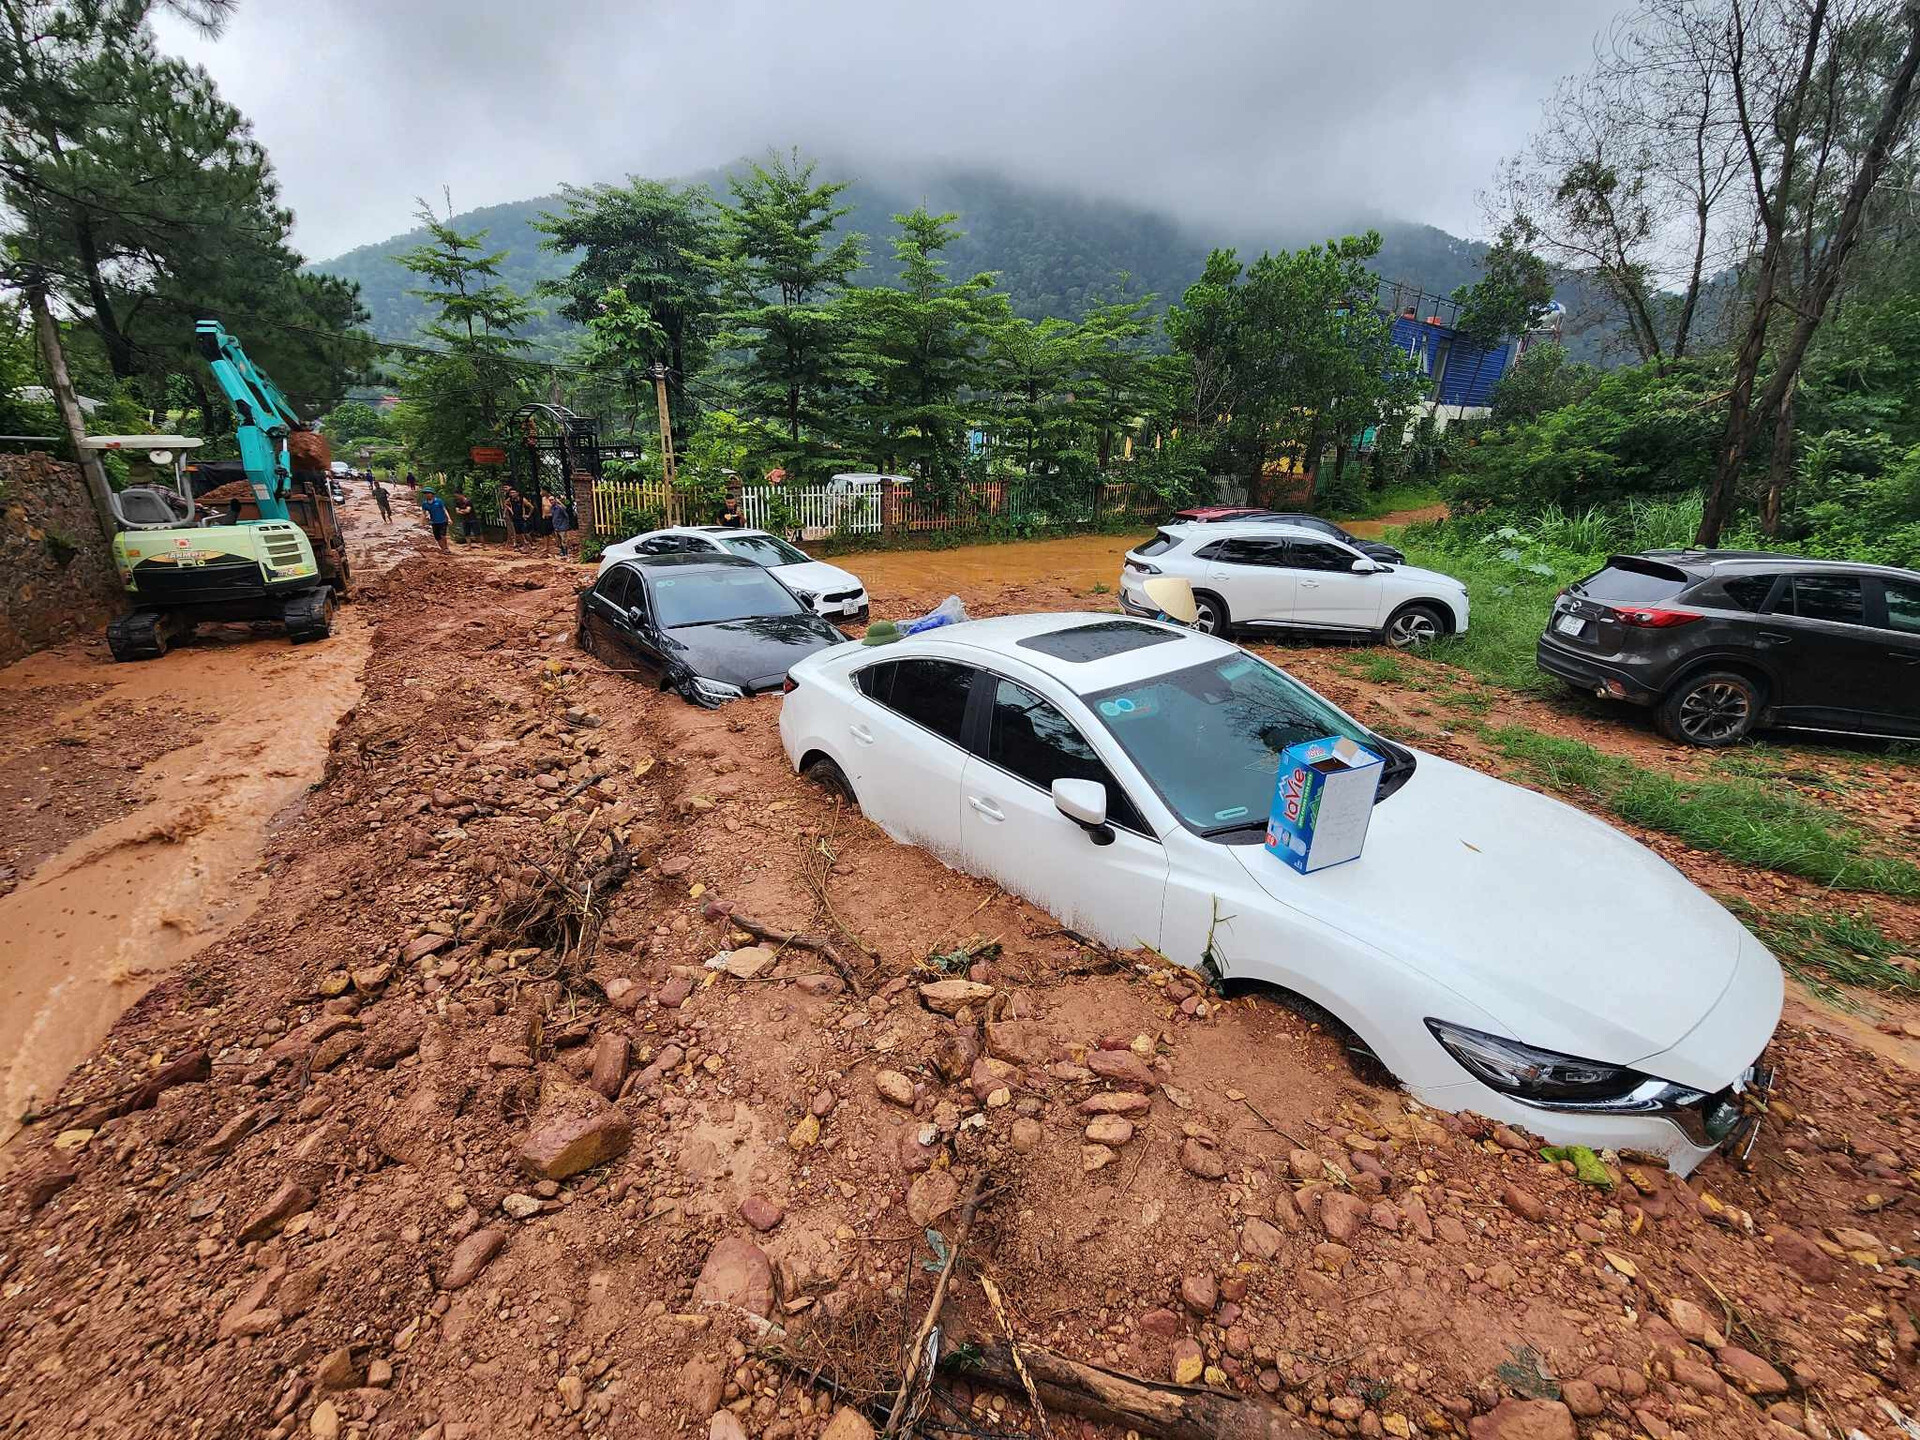 Cơn mưa lớn sáng 4/8 gây sạt lở đất, đá xuống tuyến đường ở xã Minh Phú (huyện Sóc Sơn, Hà Nội) khiến hàng loạt ô tô bị vùi lấp. Ảnh: Vietnamnet